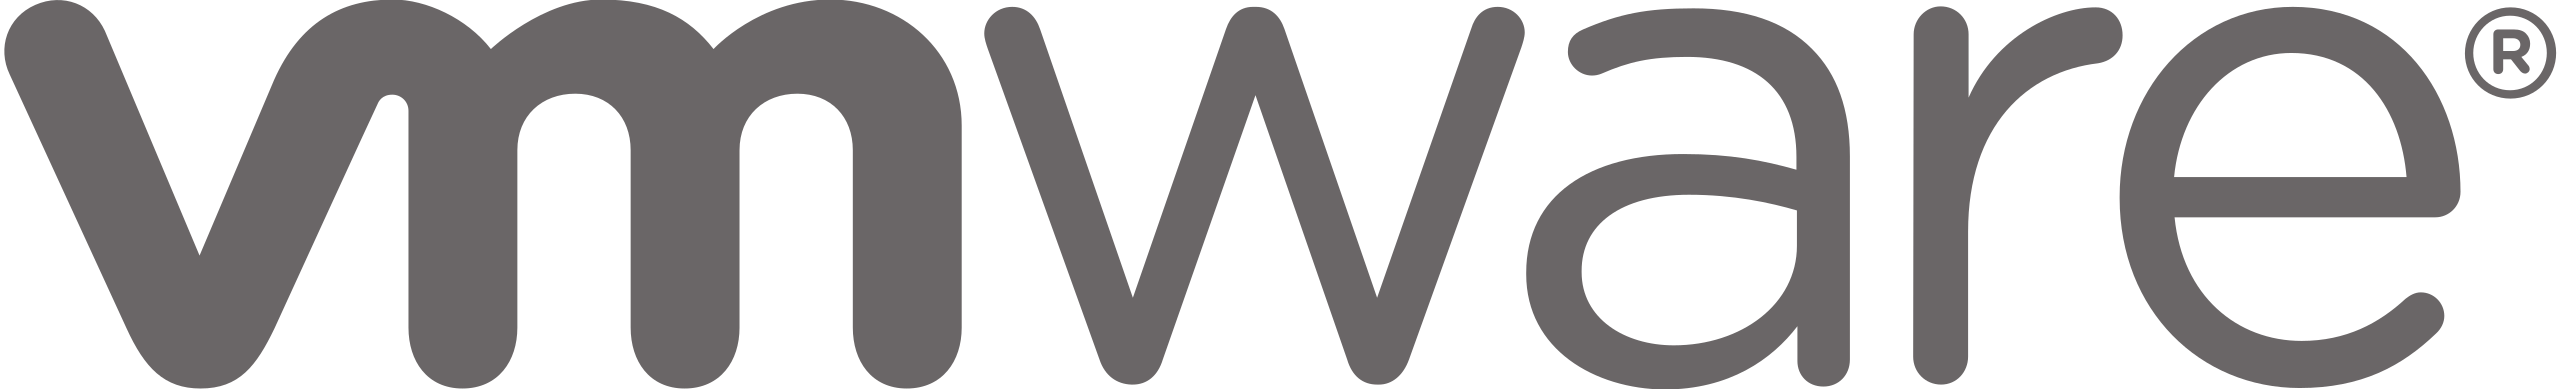 Vmware logo